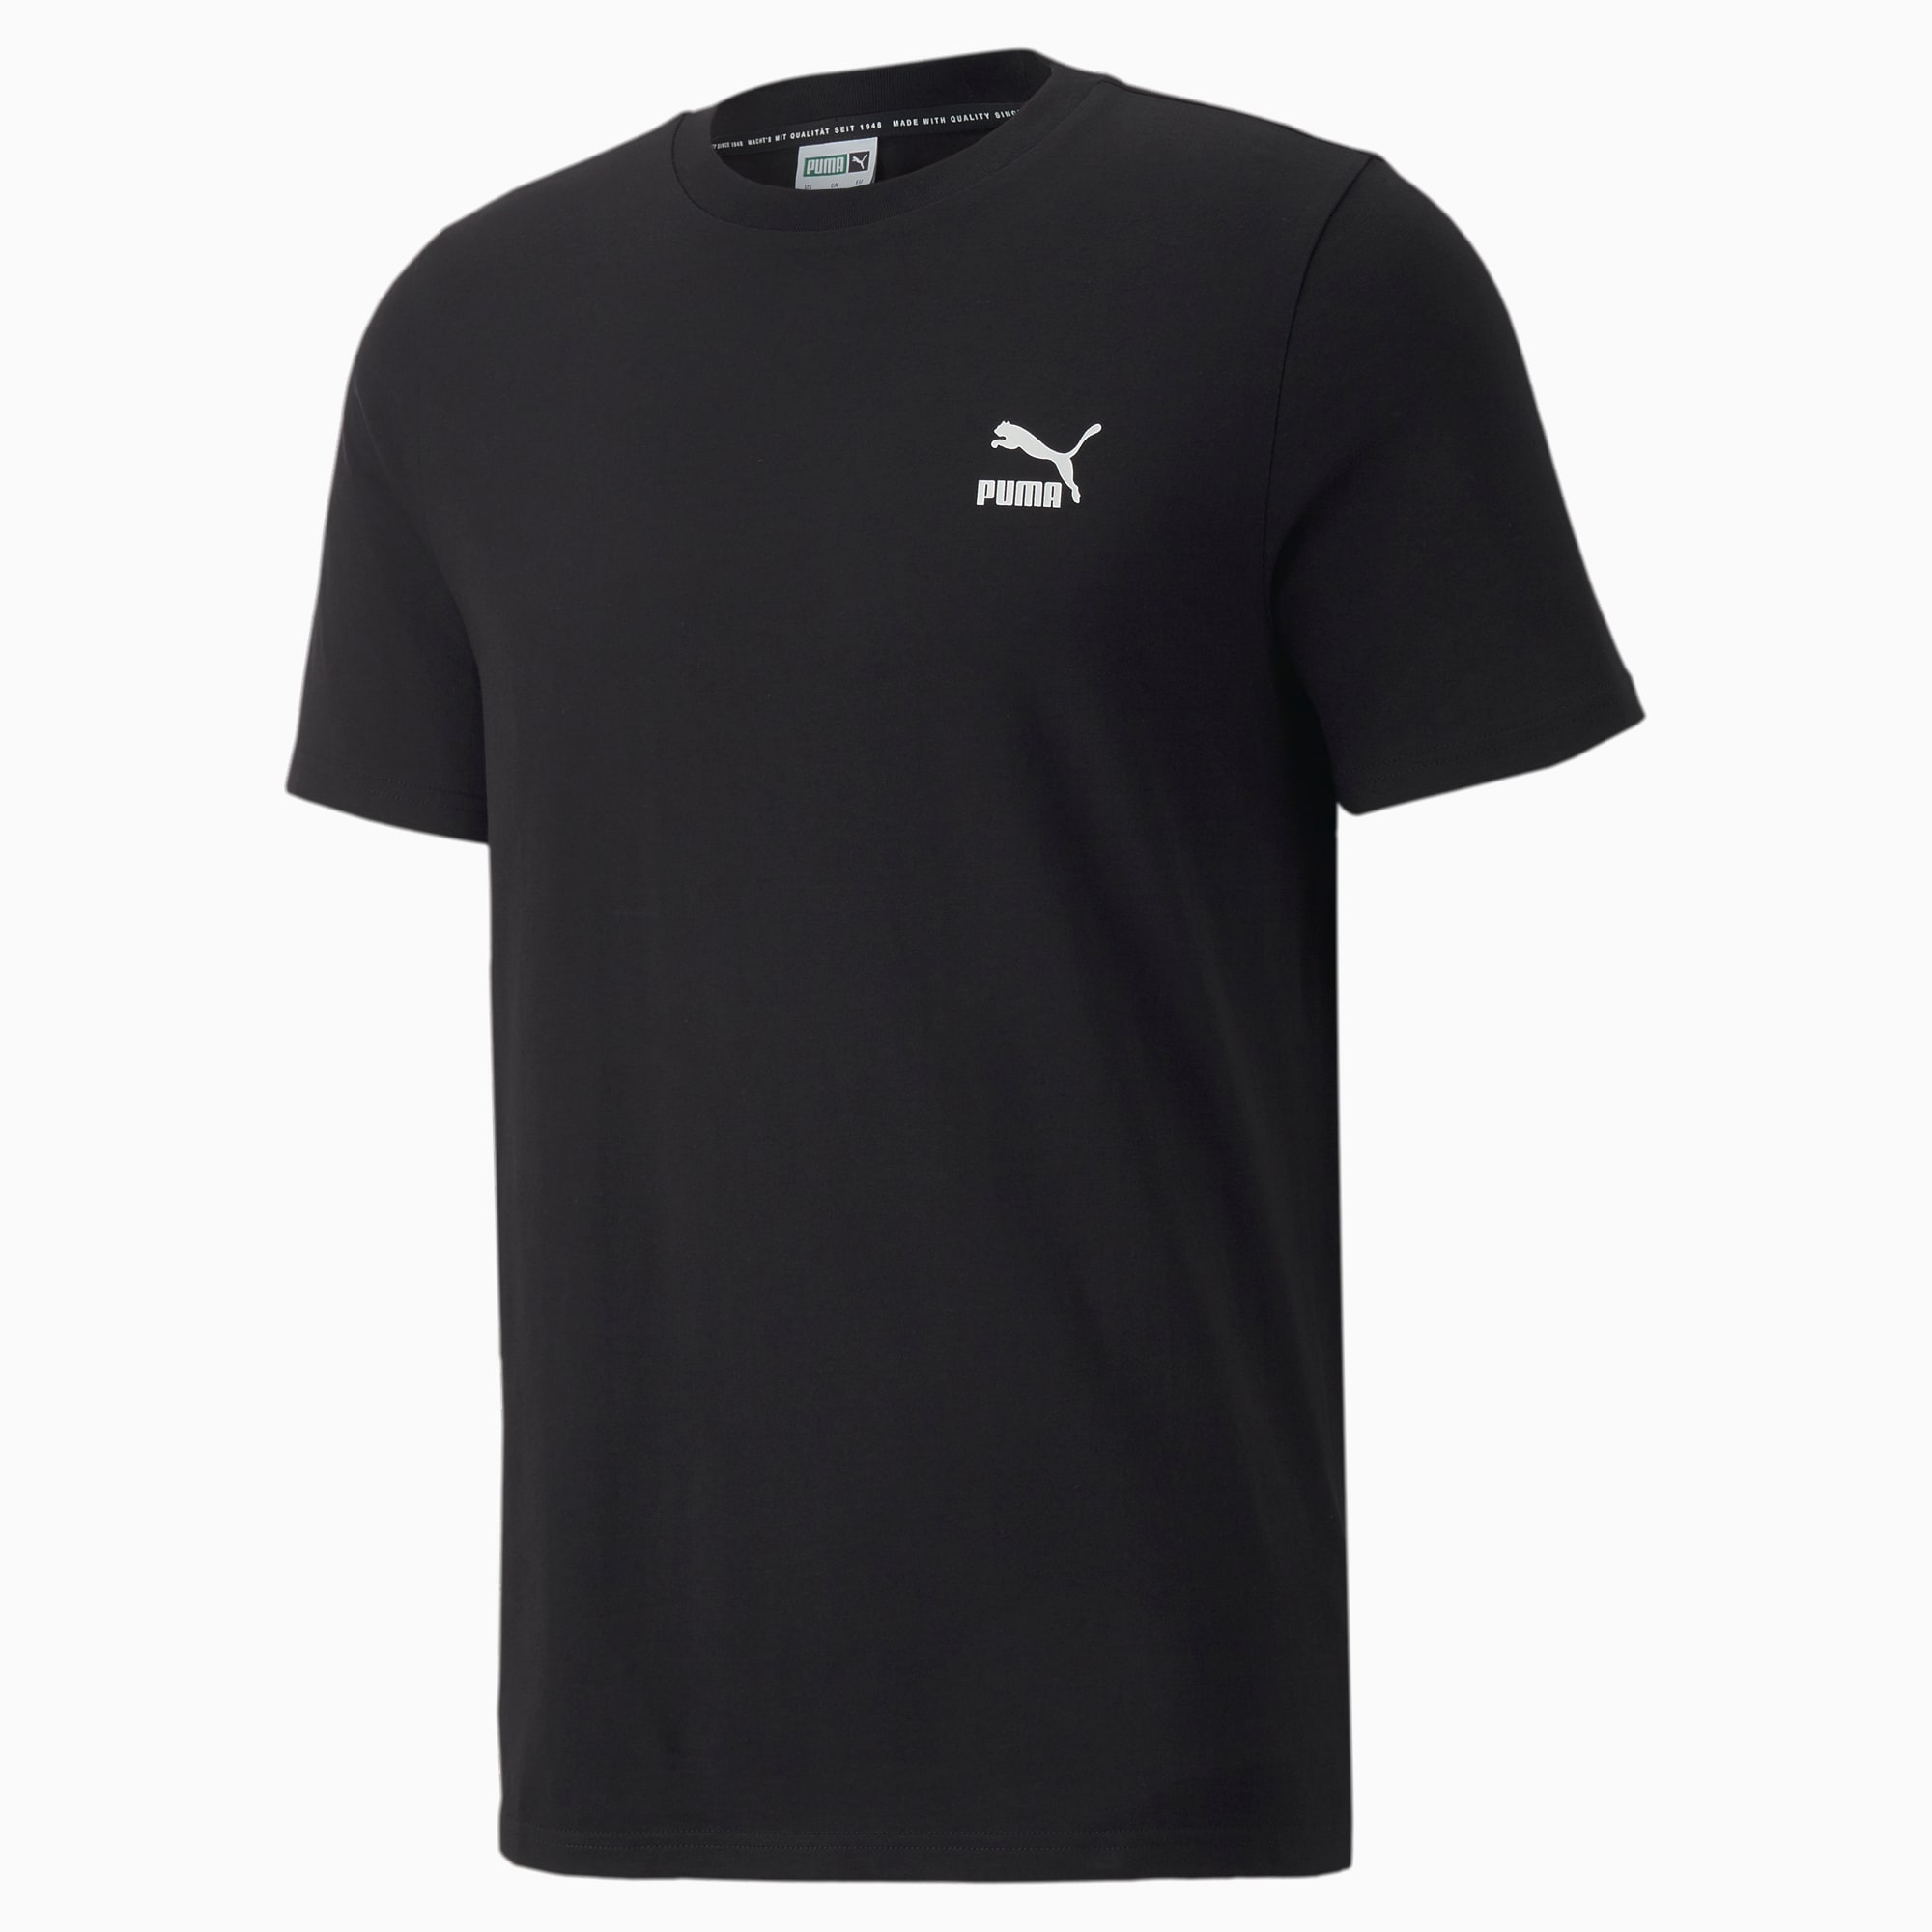 PUMA Classics Small Logo T-Shirt Men, Black